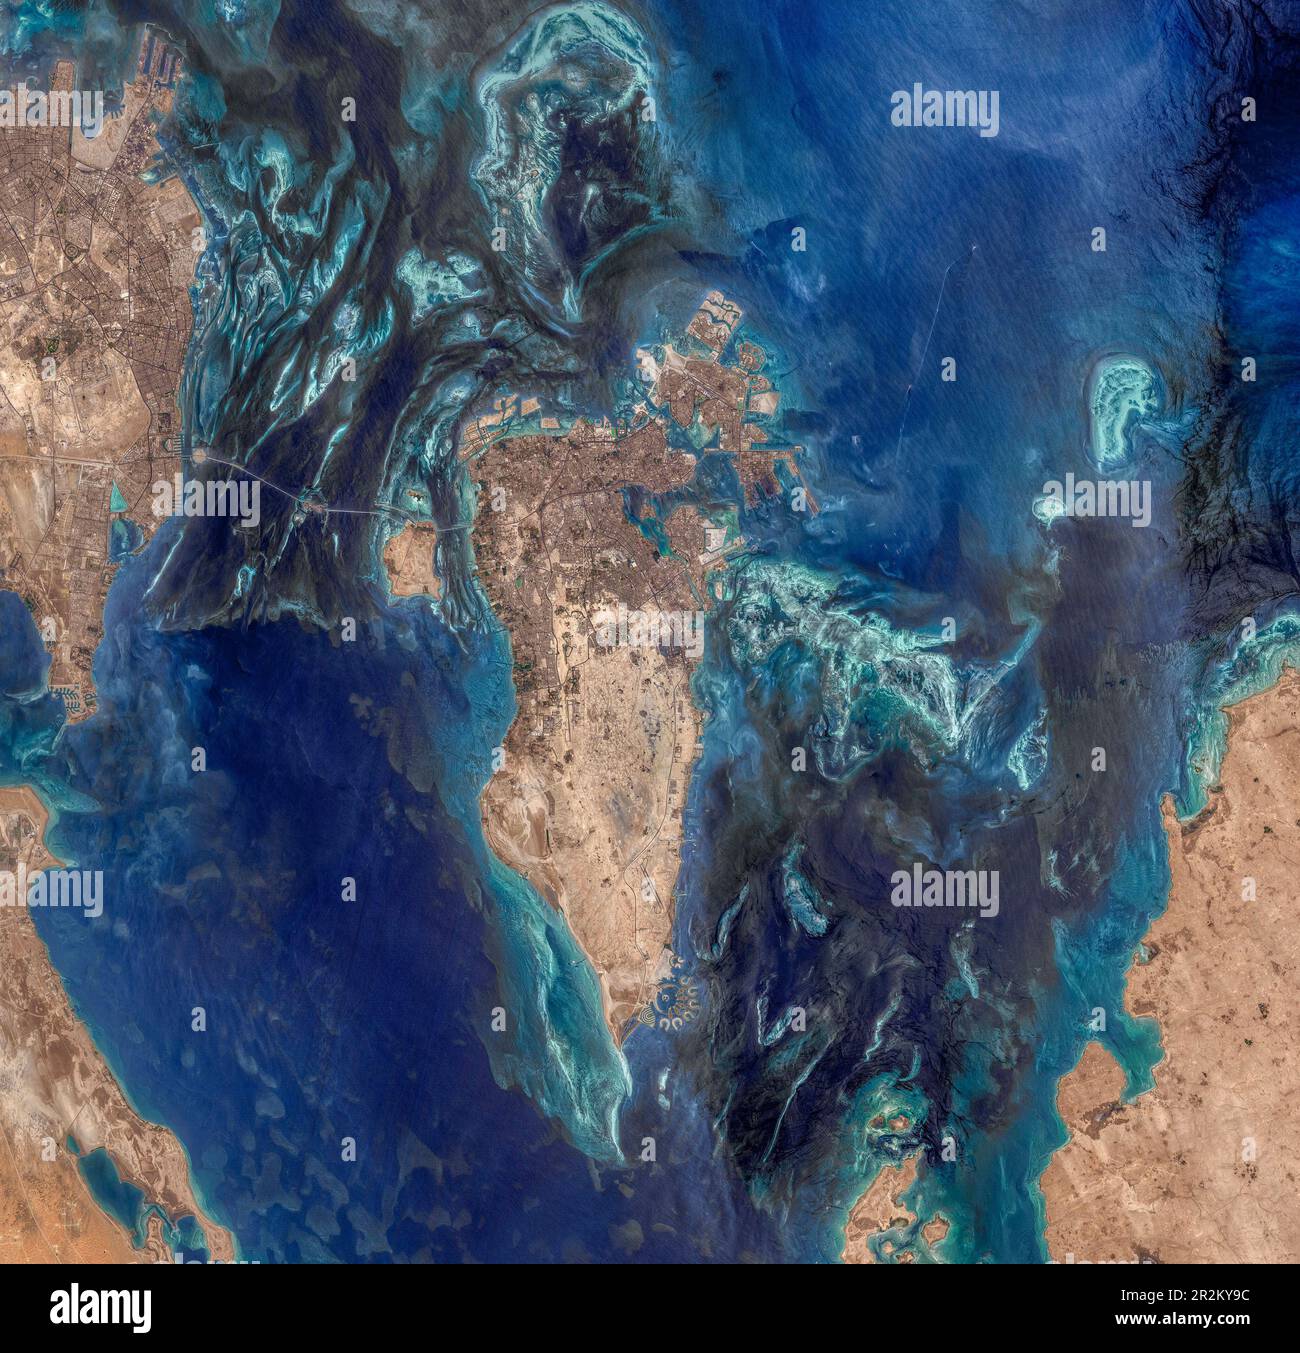 Der Satellitenblick auf Bahrain, den Persischen Golf, hat in den letzten Jahrzehnten erheblich zugenommen und zeigt Land, das aus dem Meer zurückgewonnen wurde Stockfoto